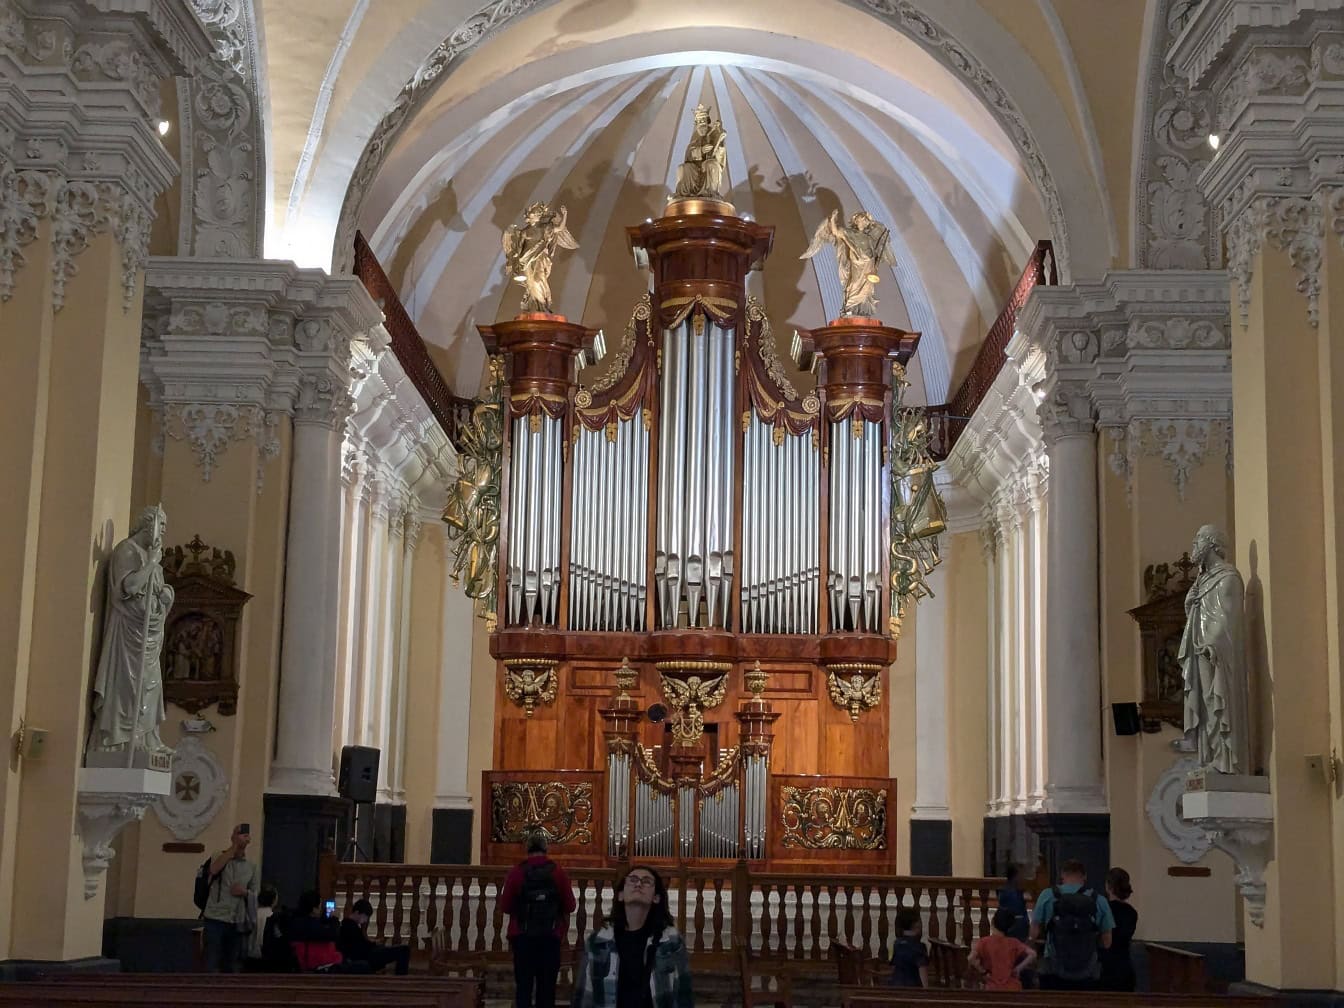 Đàn organ ống truyền thống của Bỉ trong Nhà thờ Basilica ở thành phố Arequipa ở Peru